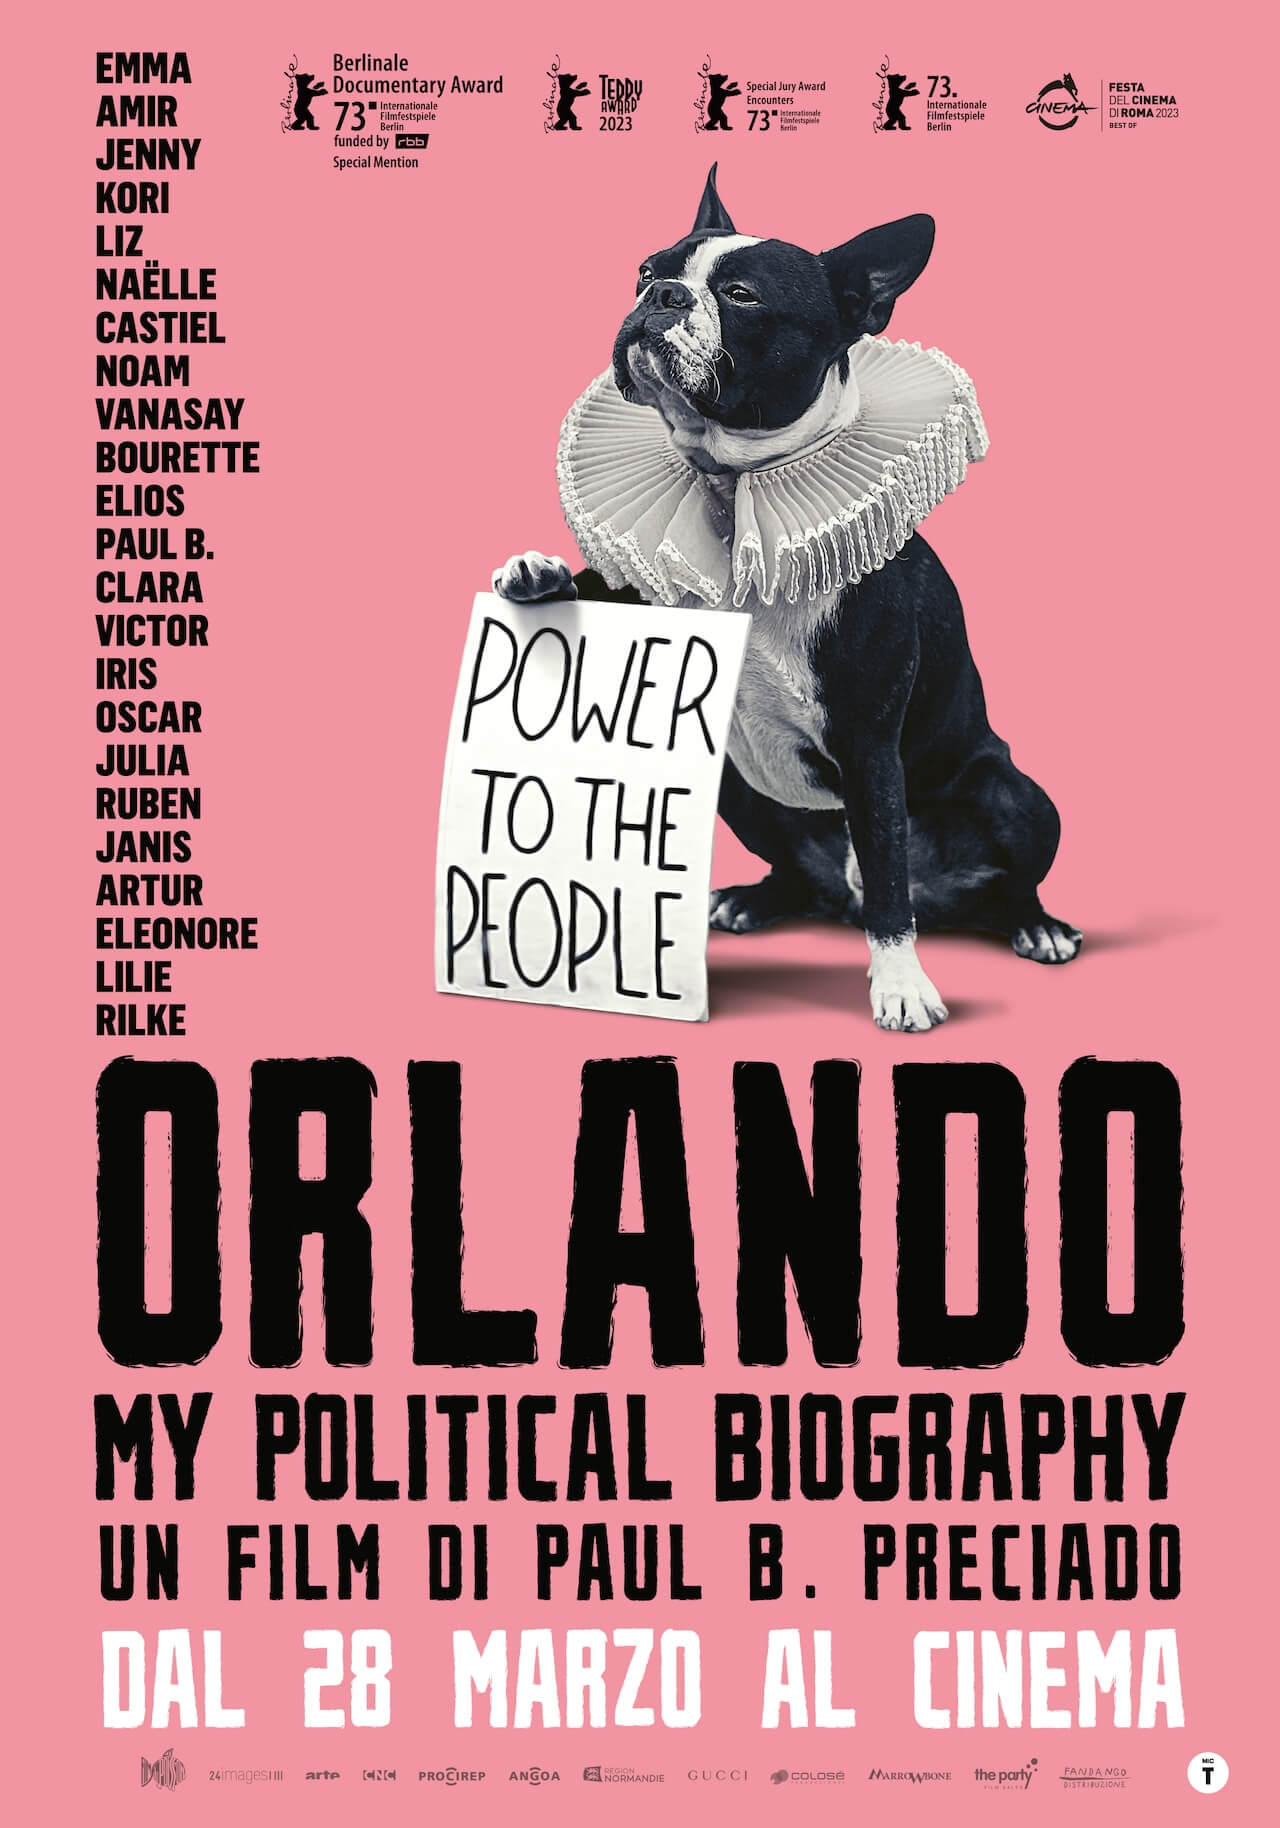 Orlando, my biographie politique